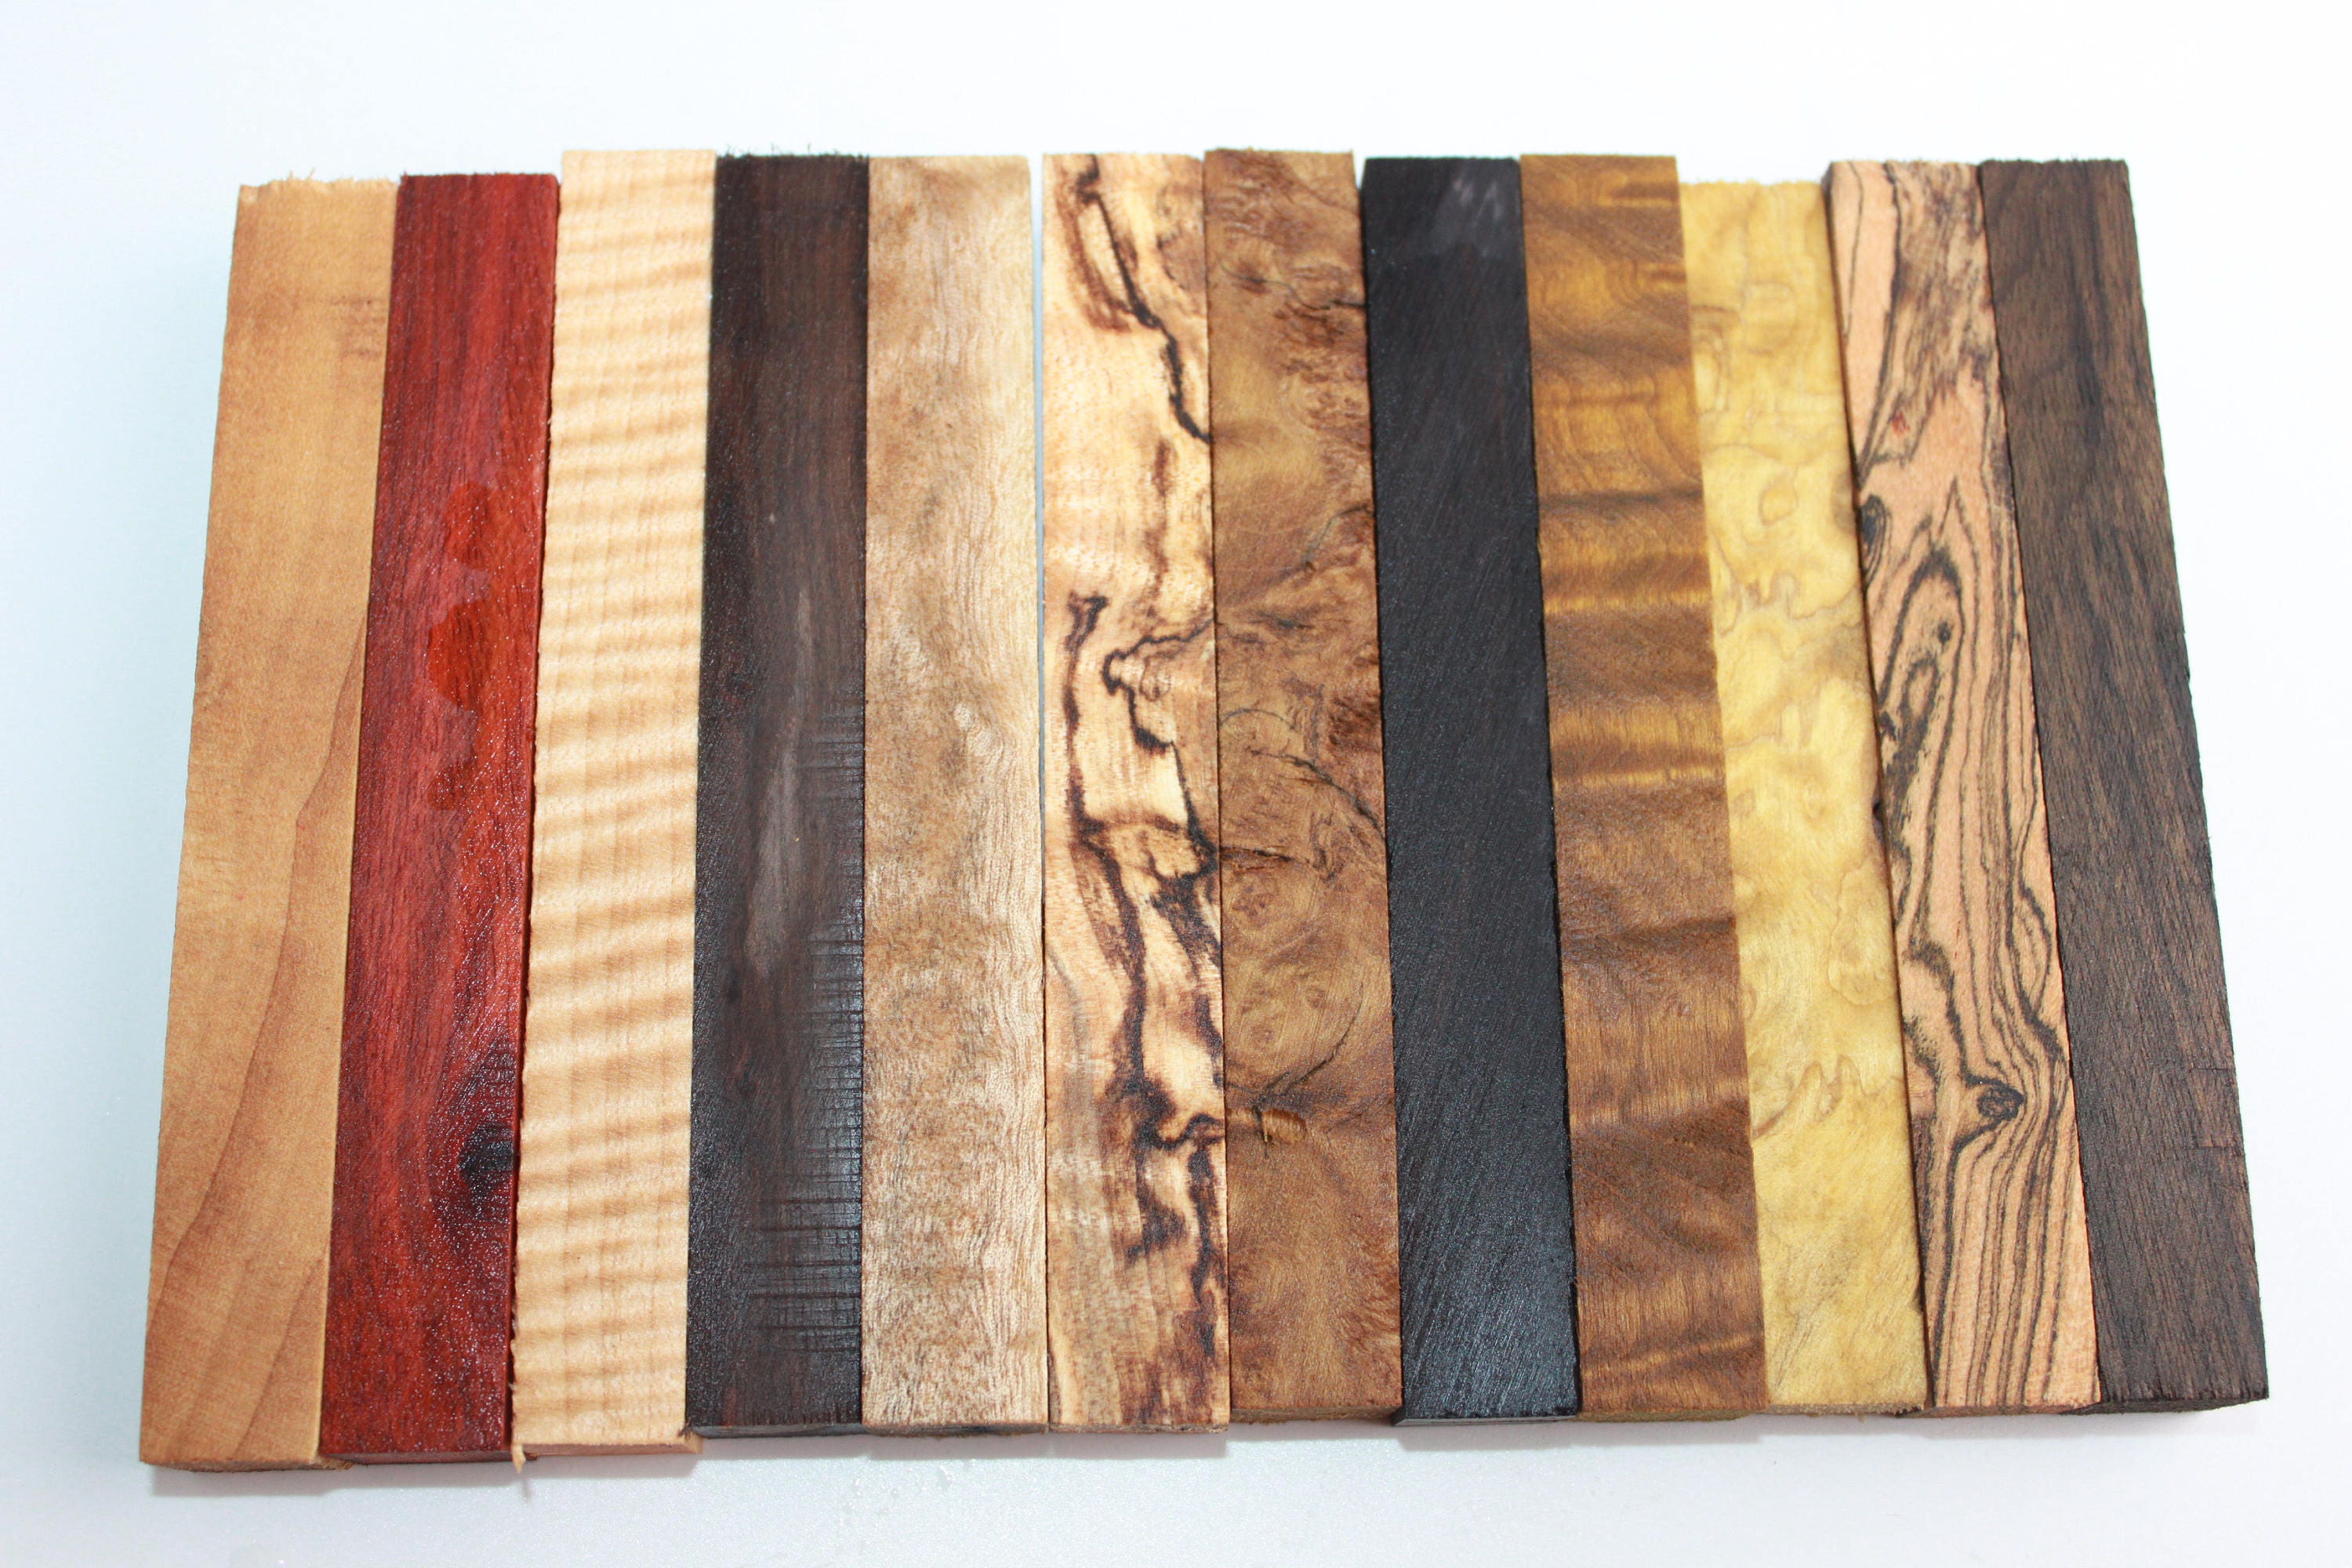 Canary wood drechselholz de bois précieux bastelholz bois schmuckholz Penblanks 15 pcs 